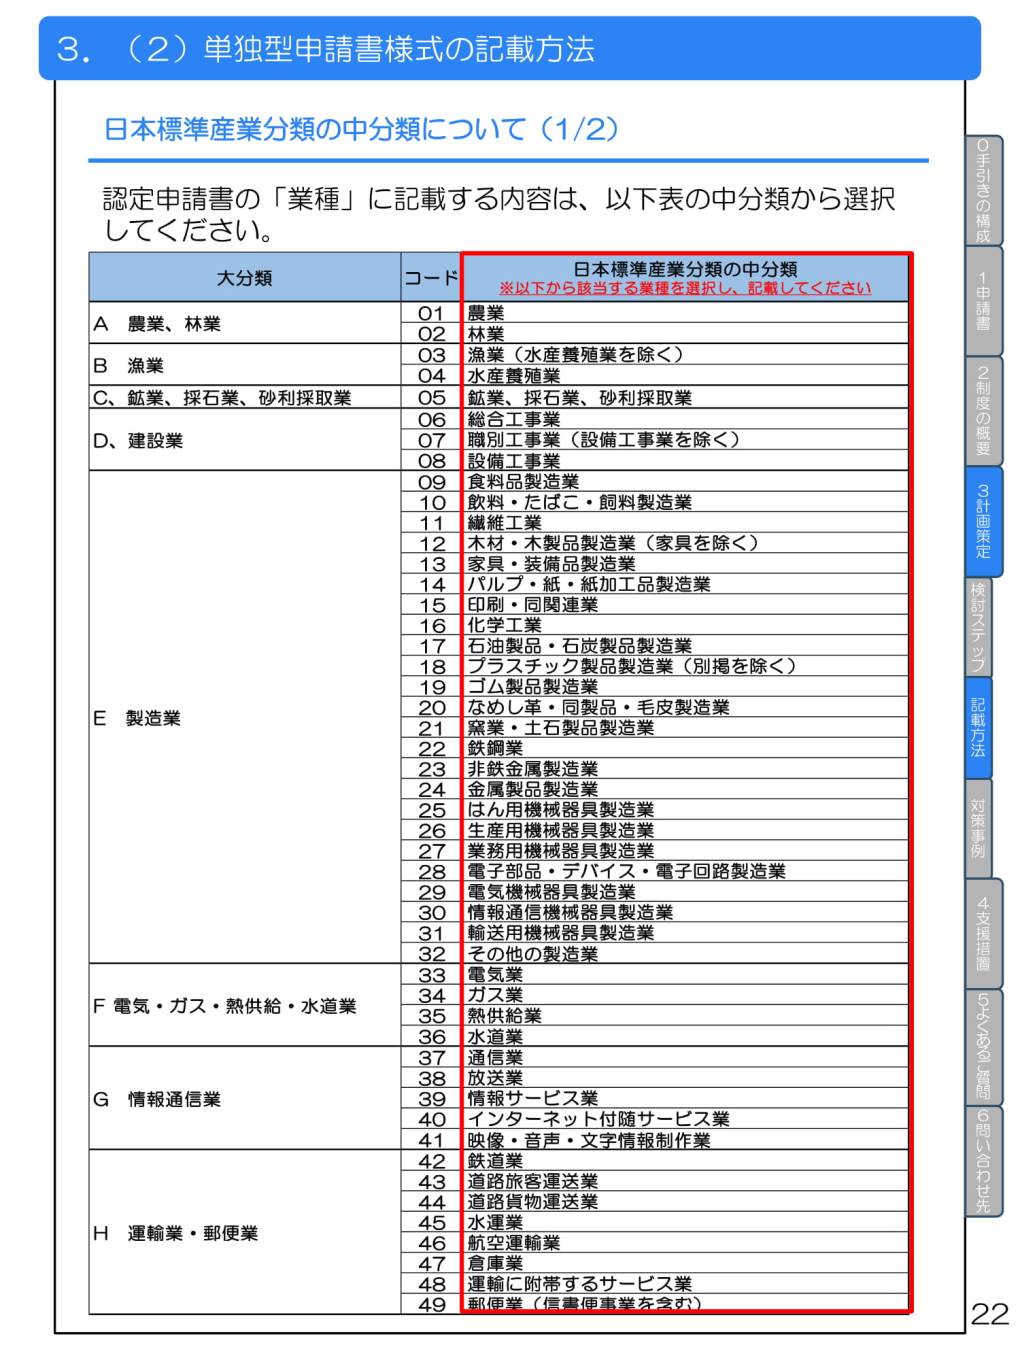 日本標準産業分類の中分類（事業継続力強化計画の申請時）